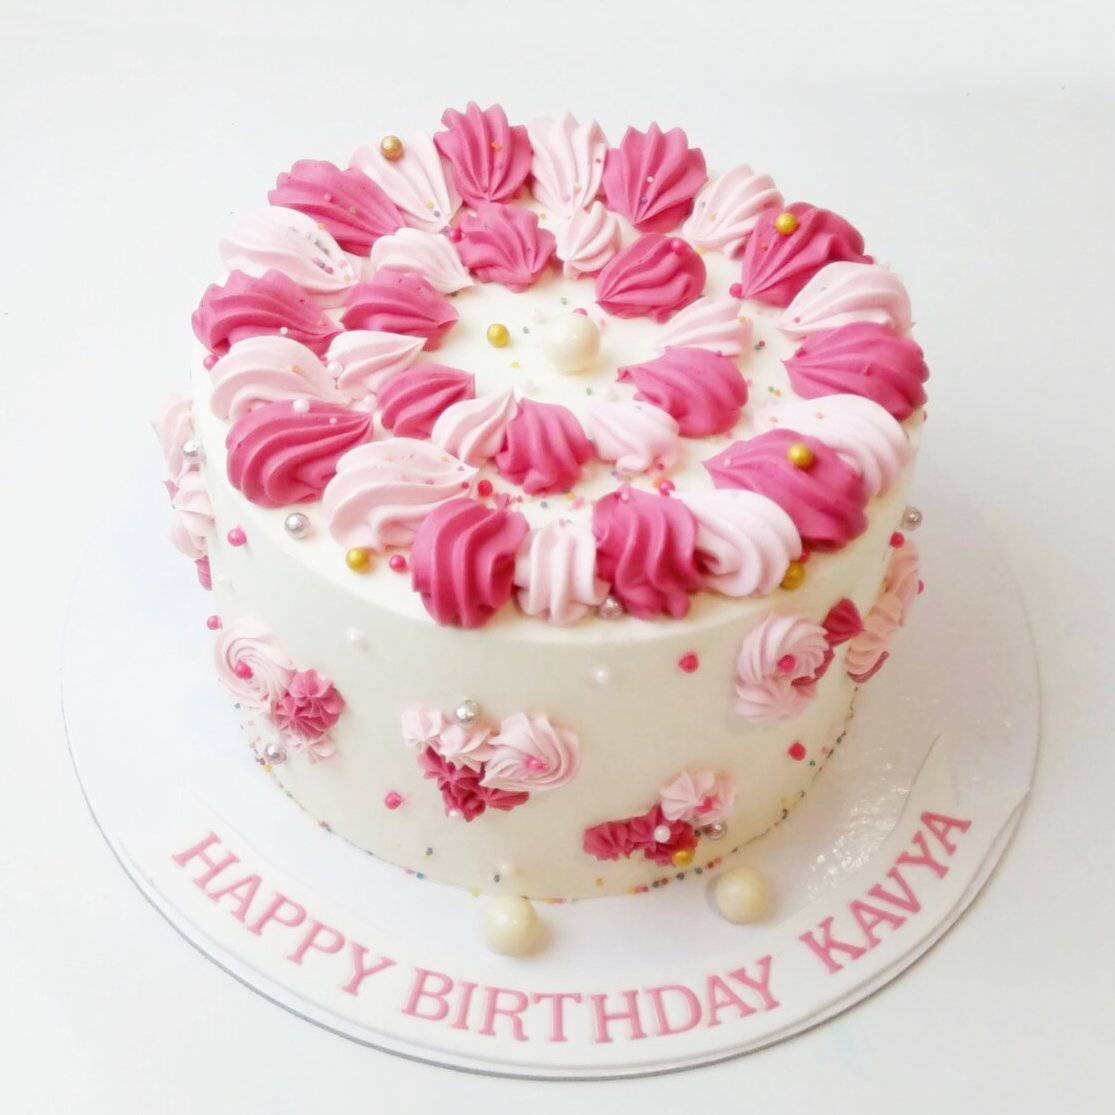 Pink Birthday Cake Girl Stock Photo 522540823 | Shutterstock